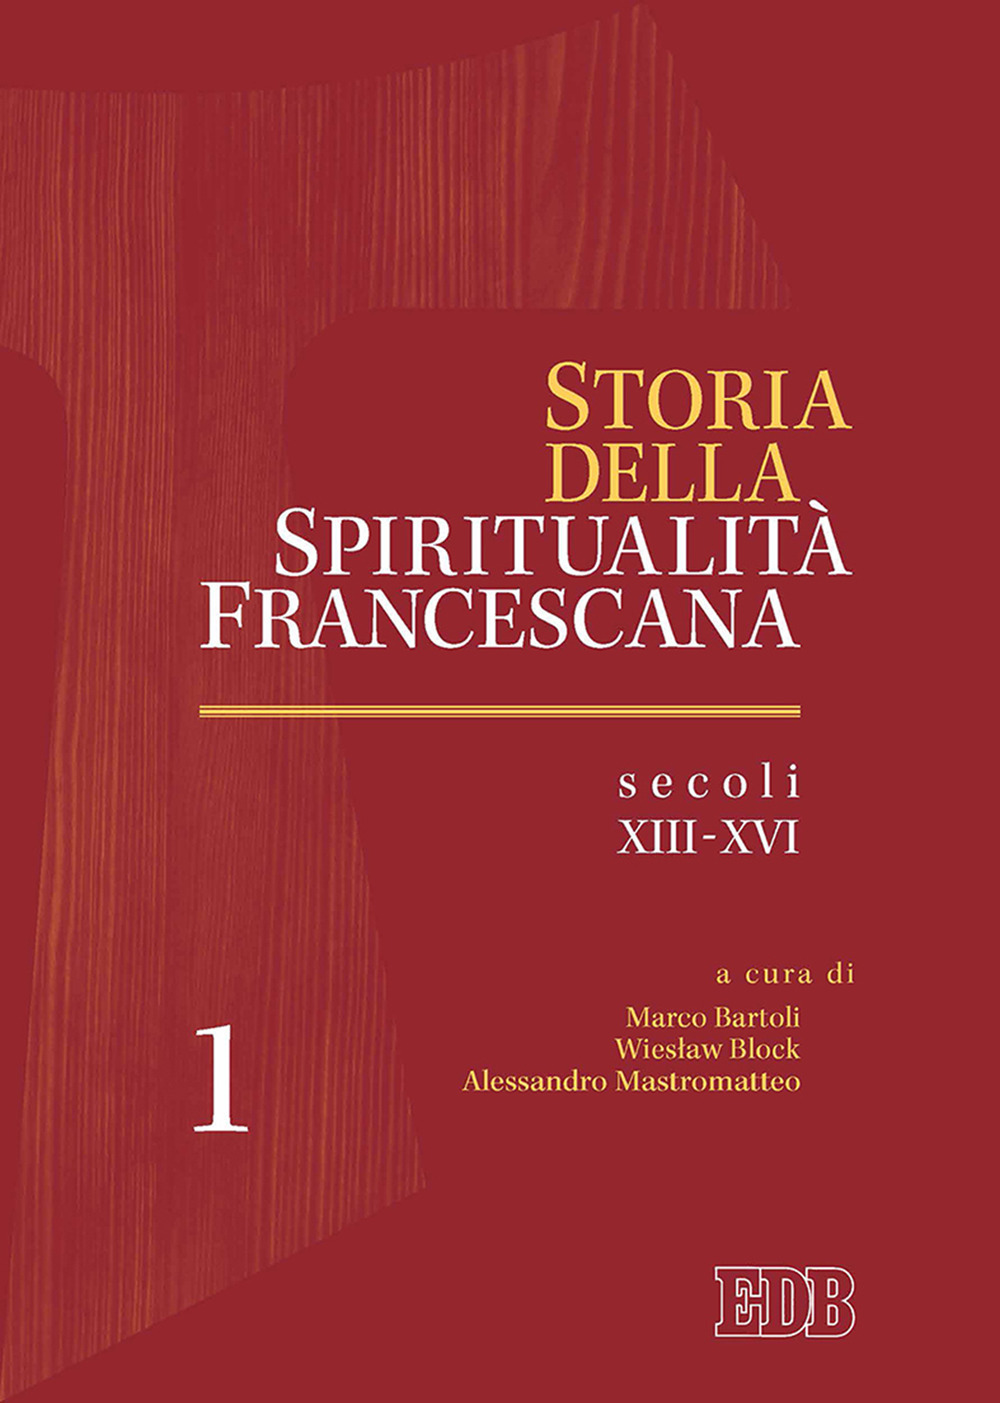 Image of Storia della spiritualità francescana. Vol. 1: Secoli XIII-XVI.